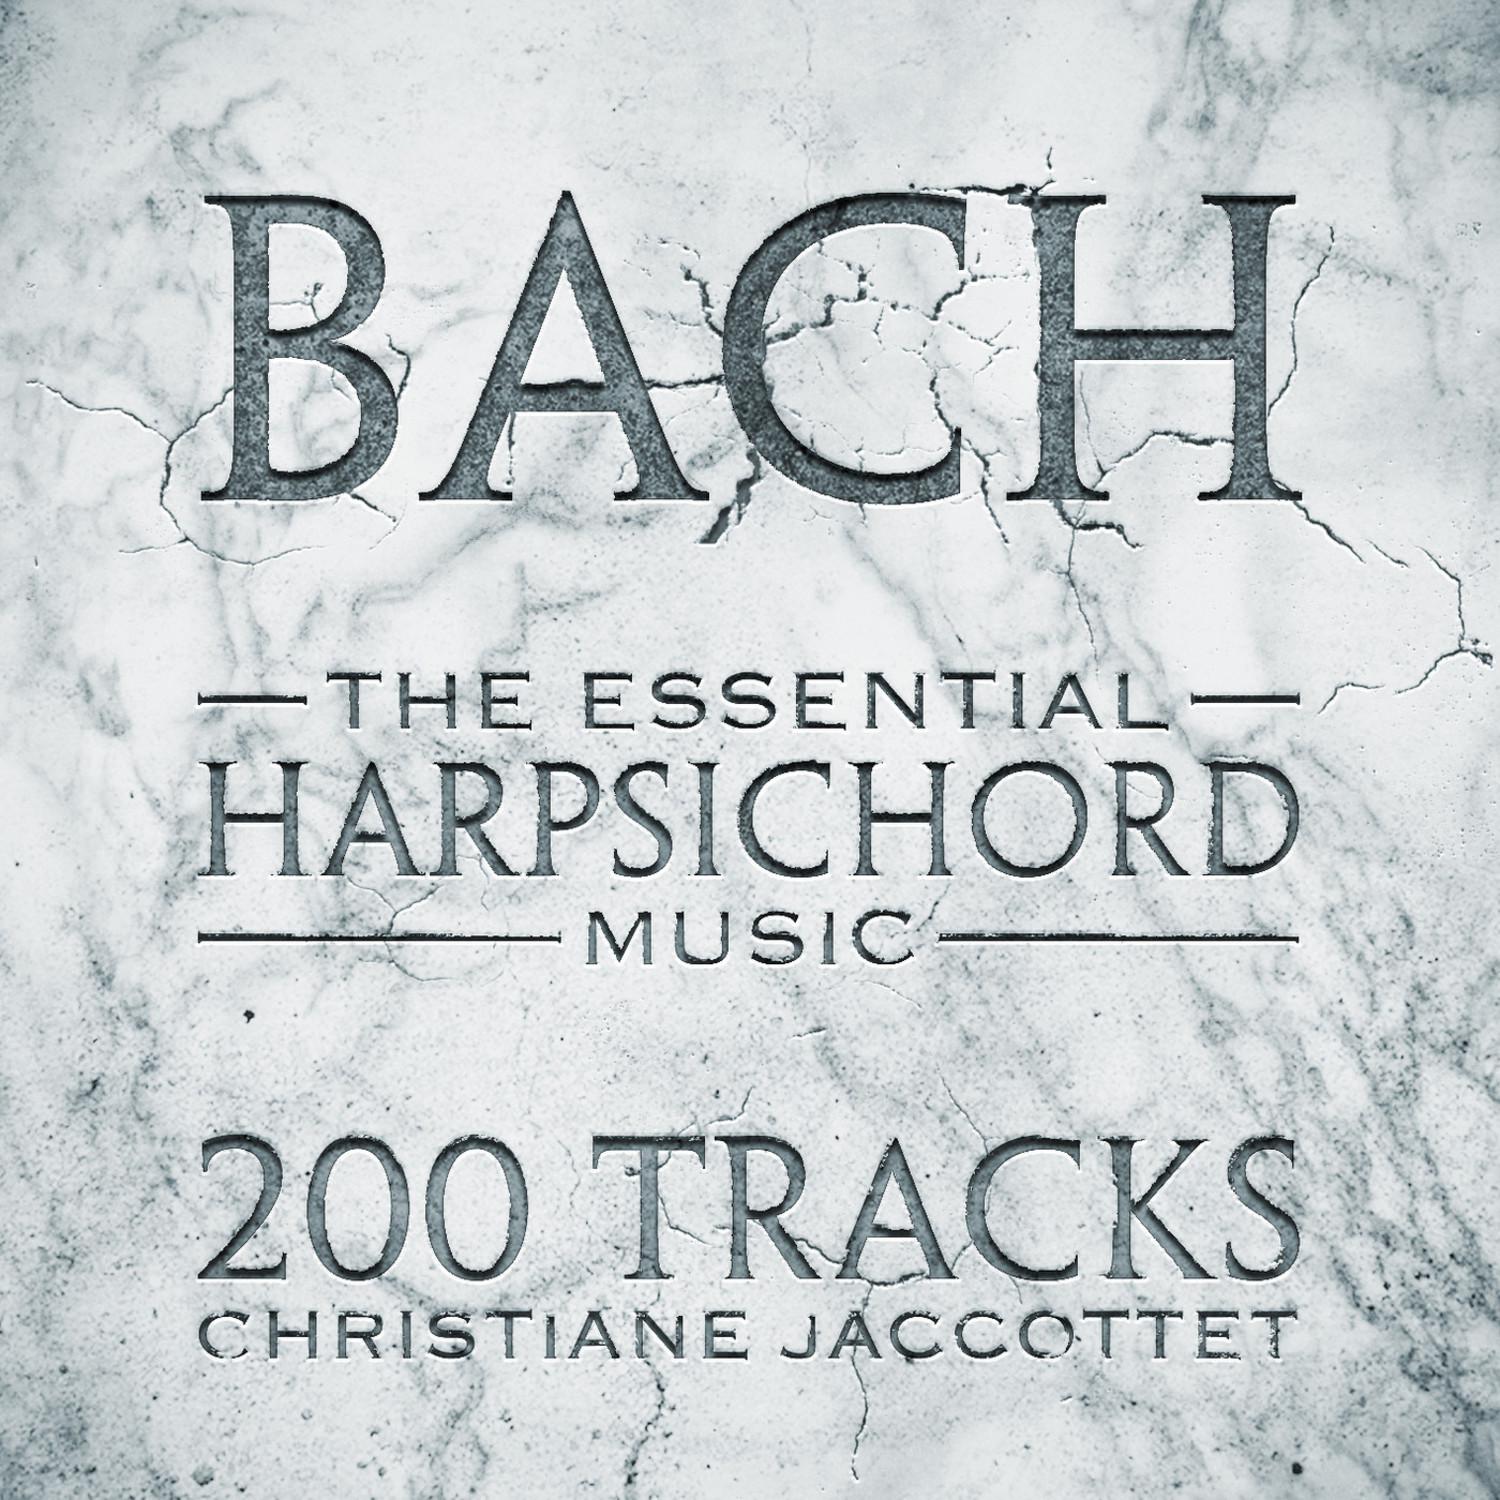 Partita No. 6 in E Minor for Harpsichord, BWV 830: IV. Air